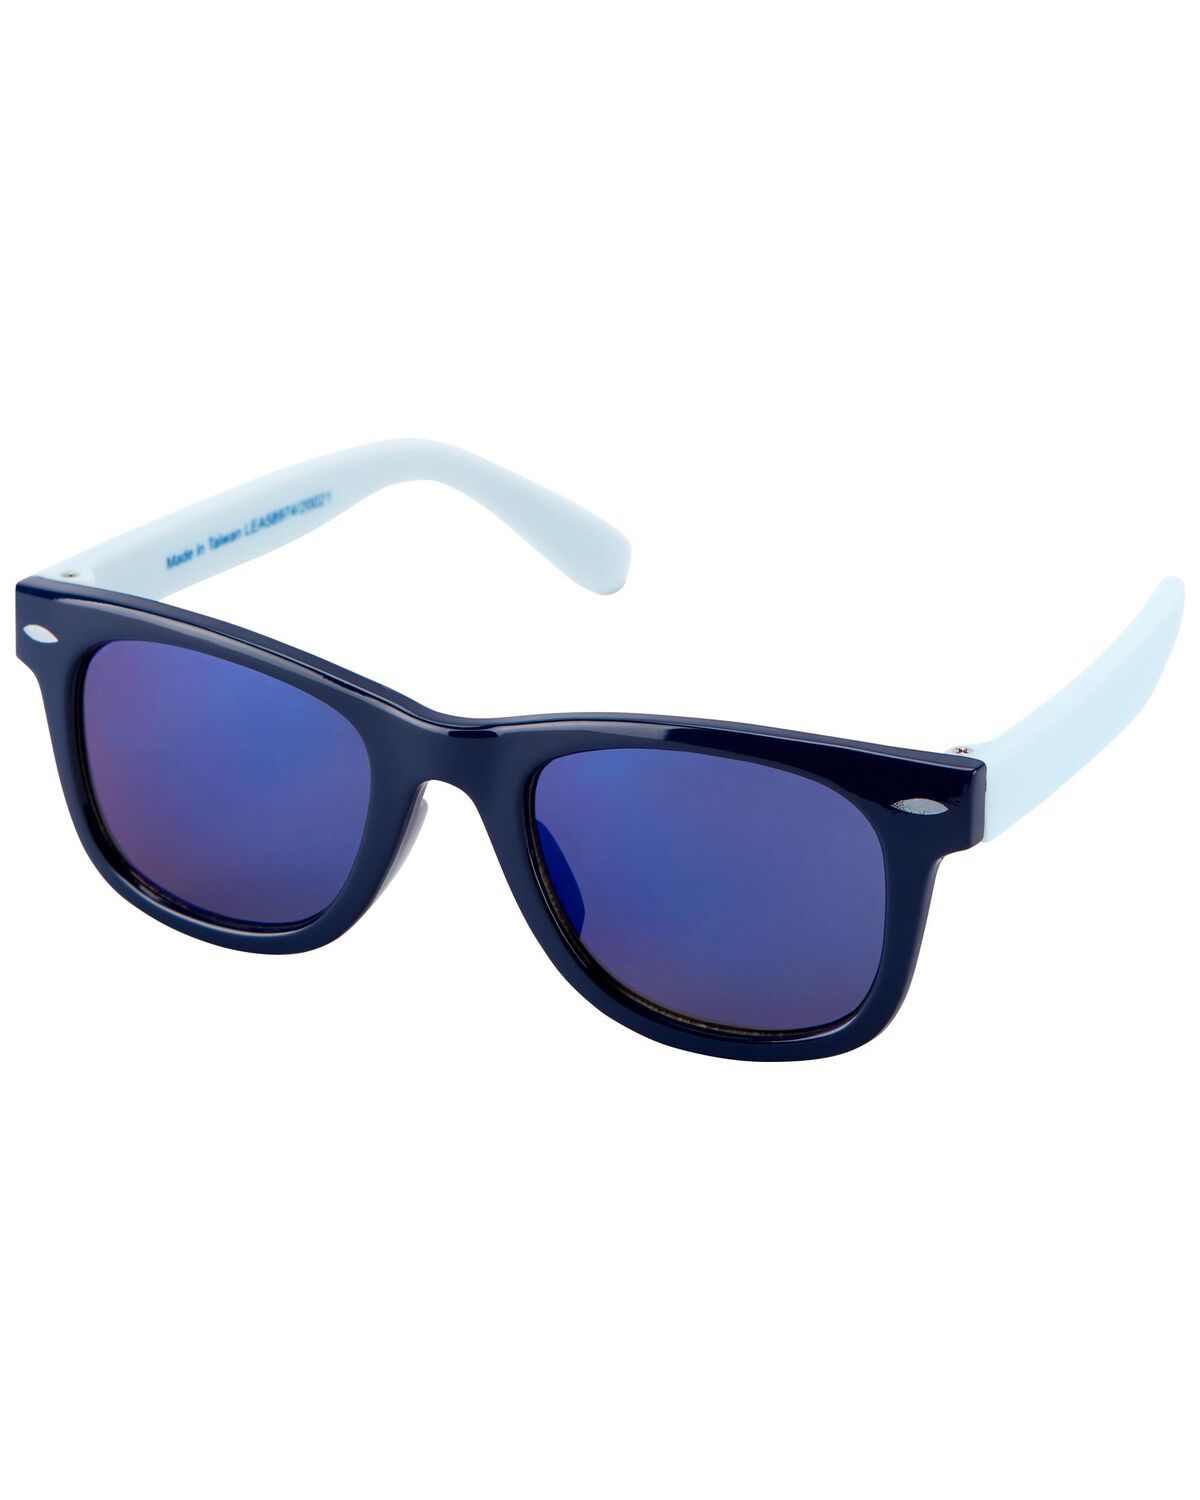 Blue Baby Classic Sunglasses | carters.com | Carter's